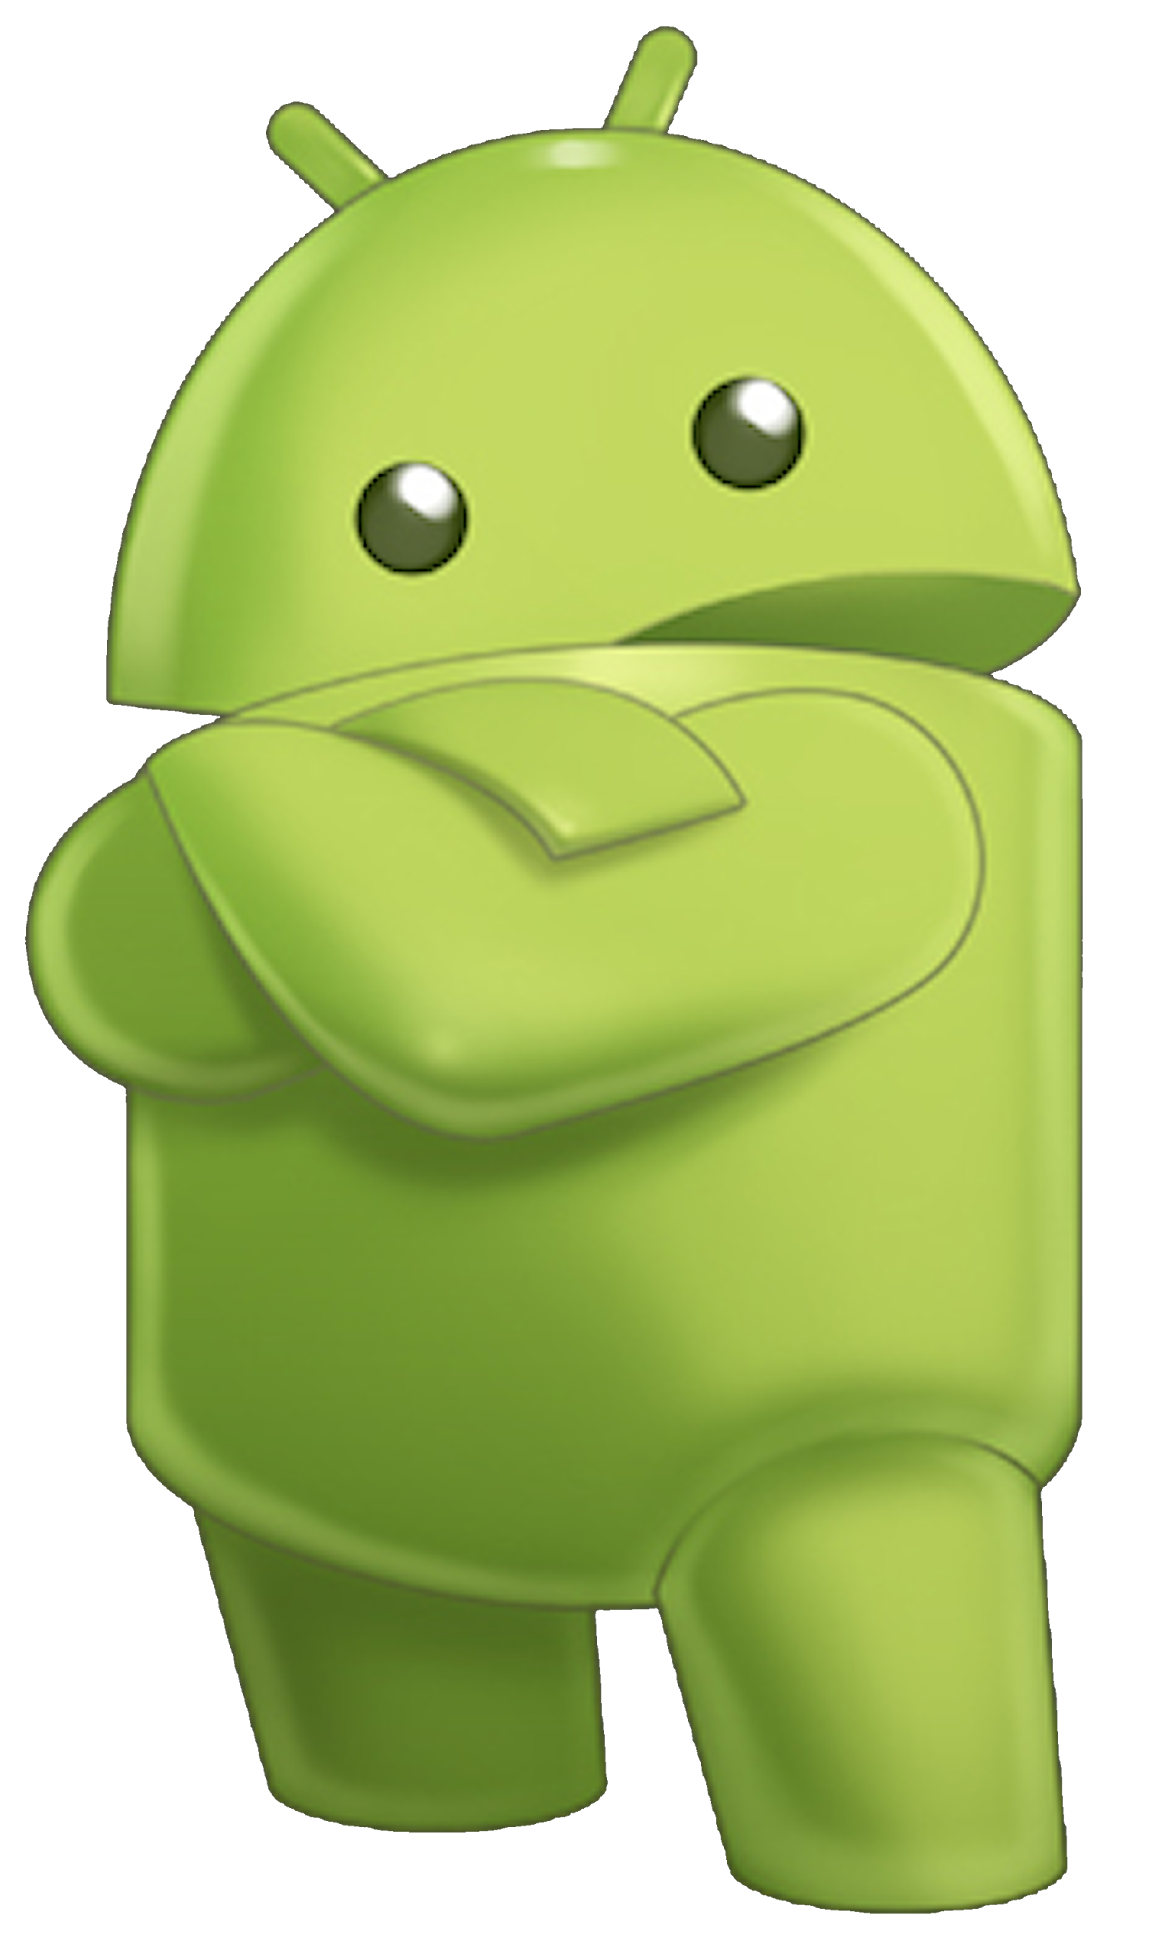 Android Logo Wallpaper - WallpaperSafari